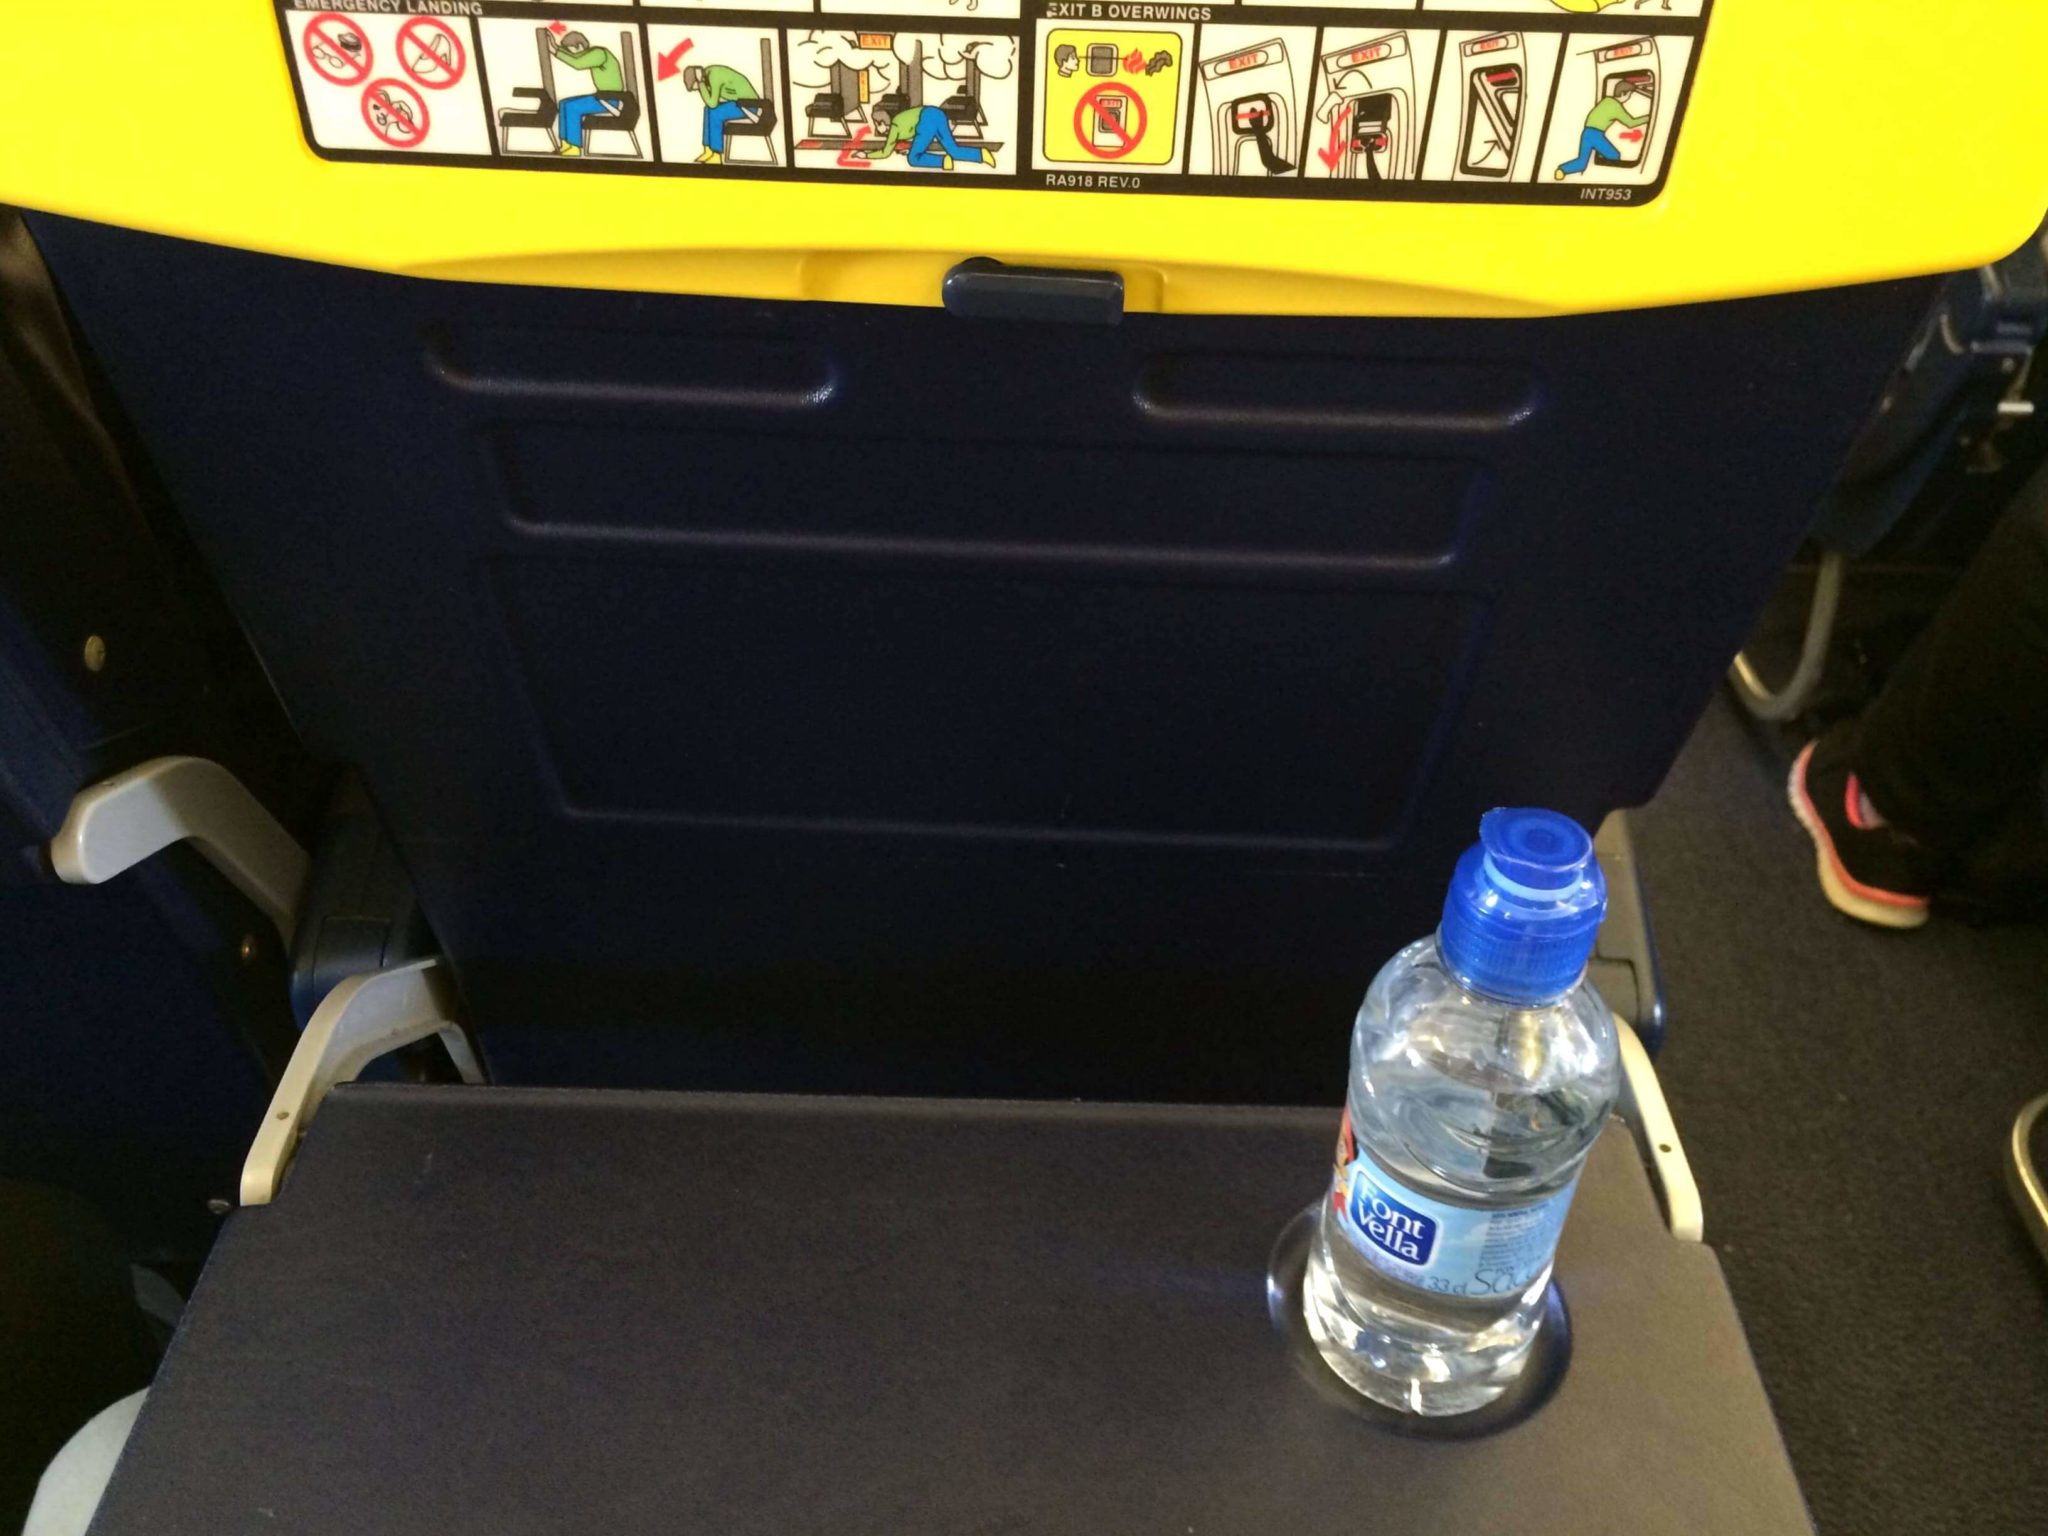 Servicio de a bordo, Ryanair Girona-Pisa